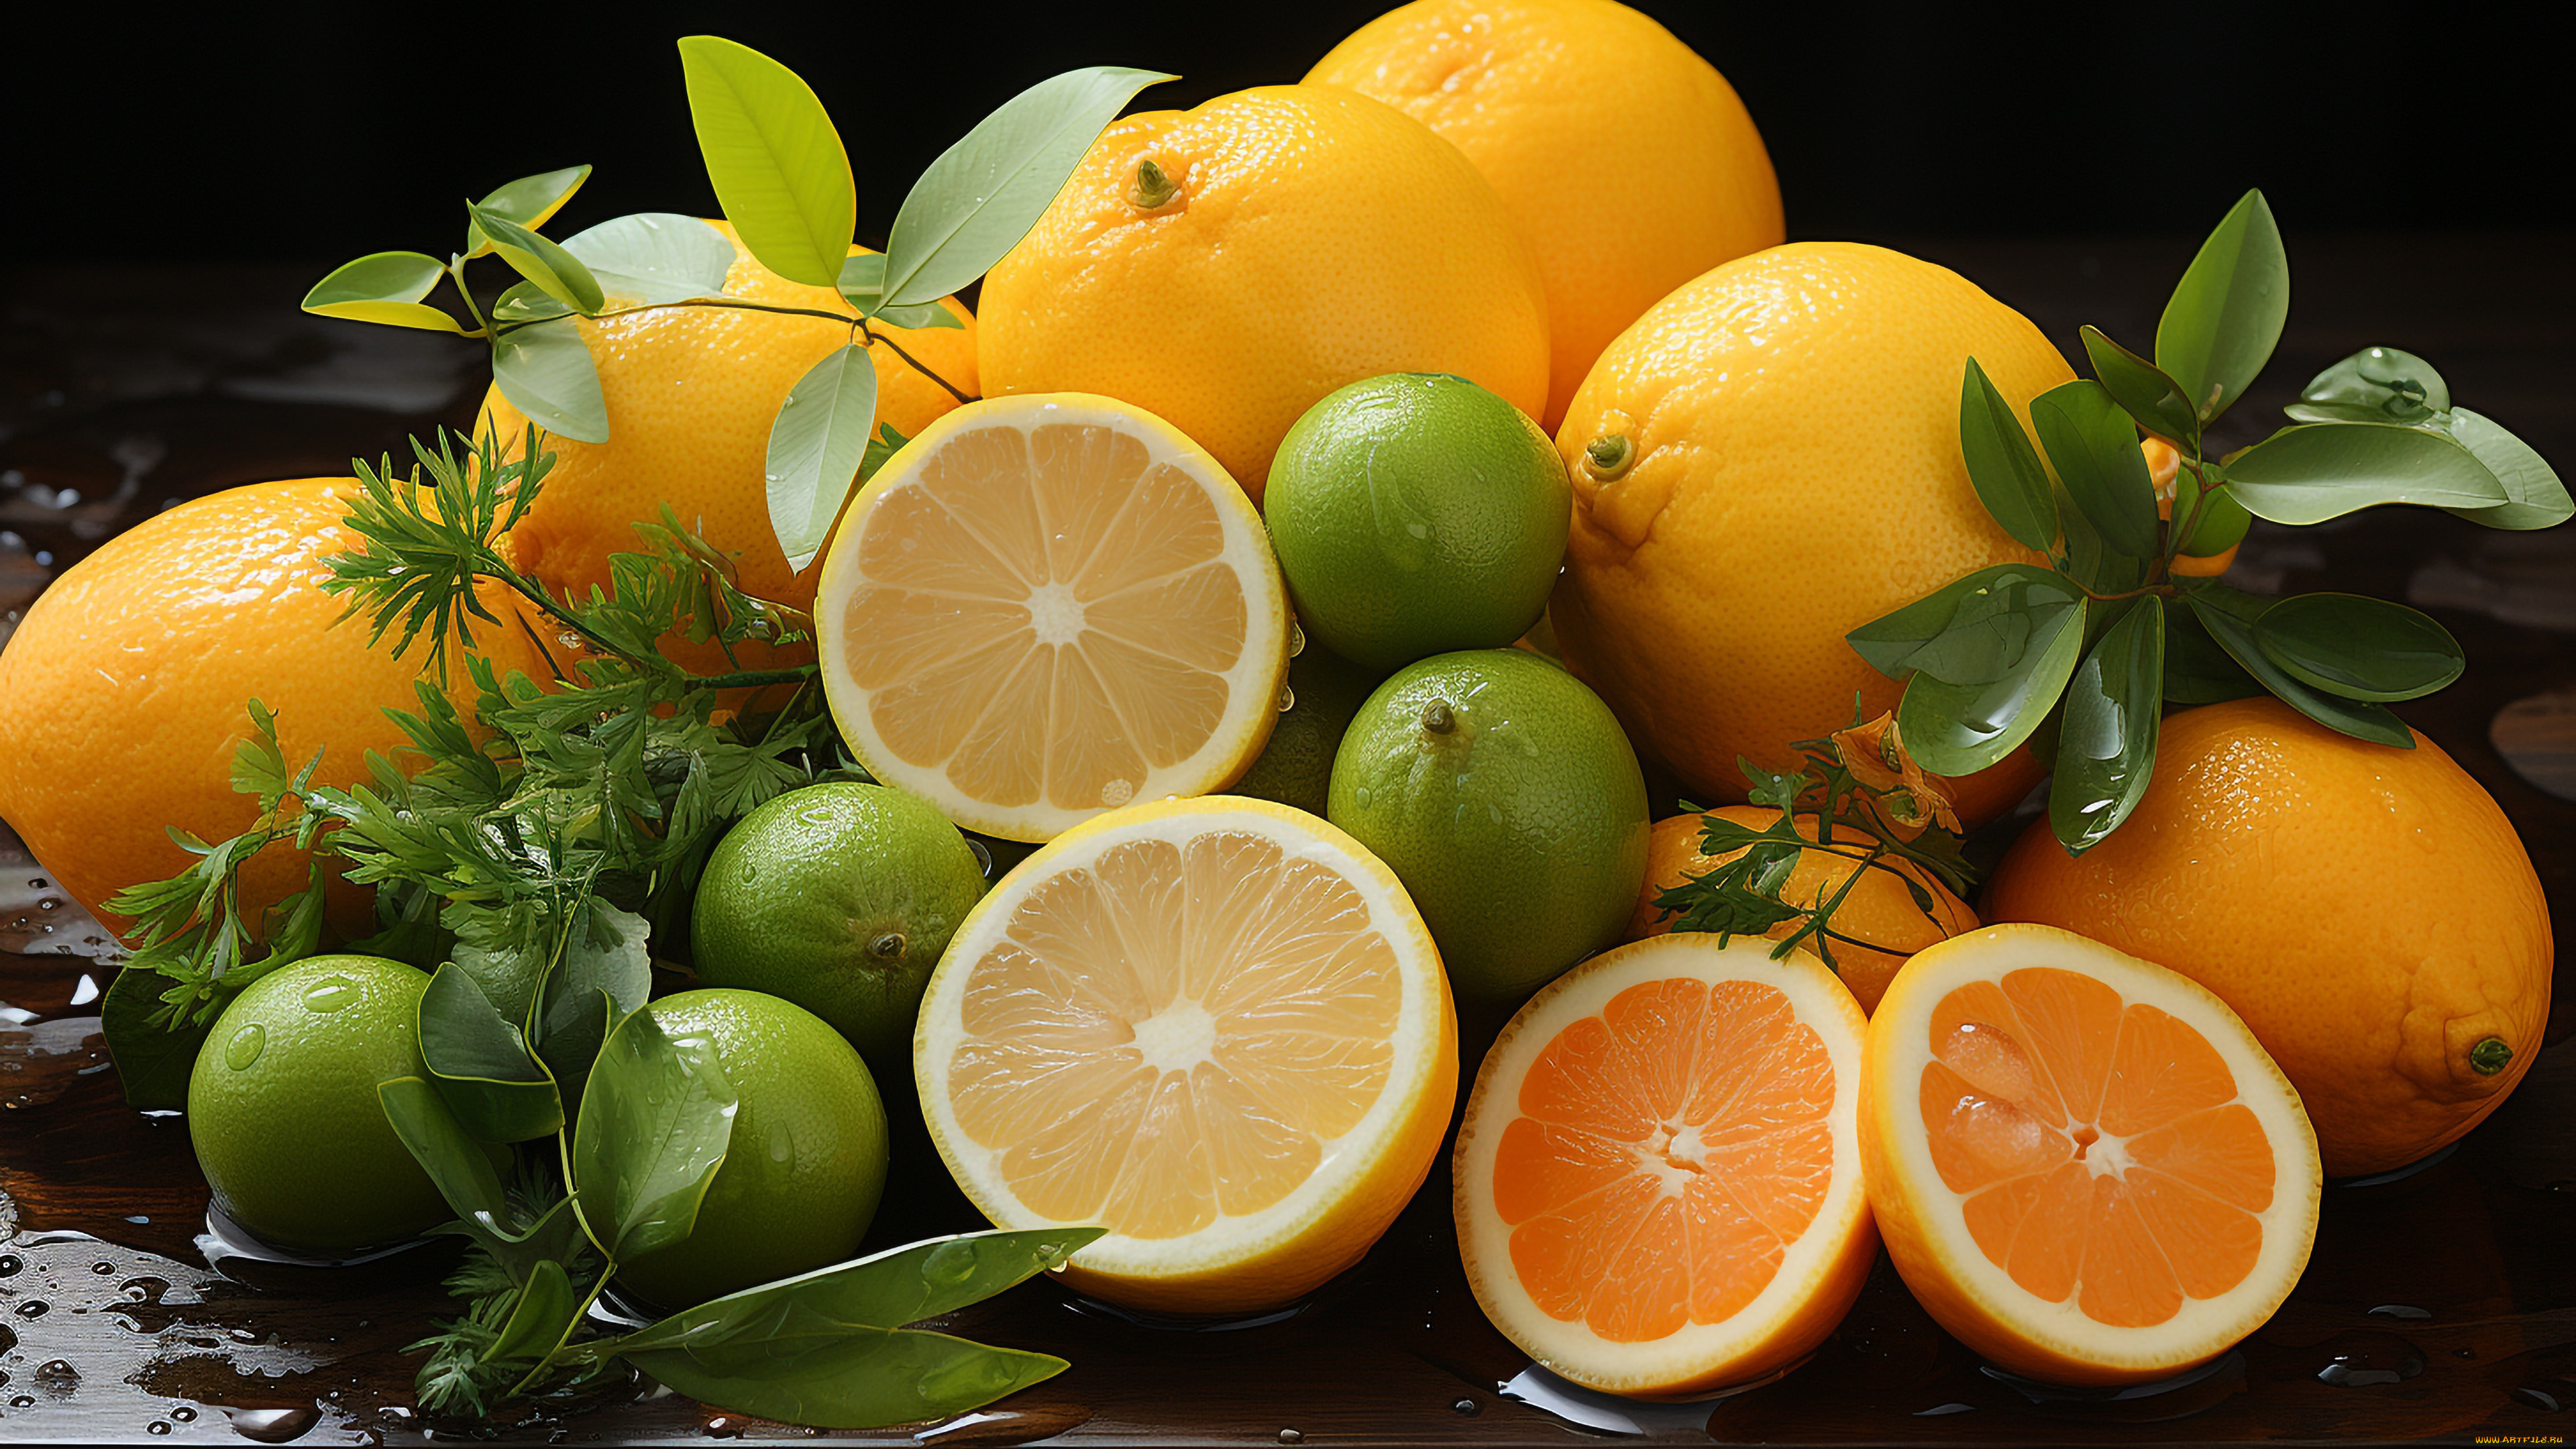 рисованное, еда, листья, вода, капли, влага, апельсины, фрукты, цитрусы, сочные